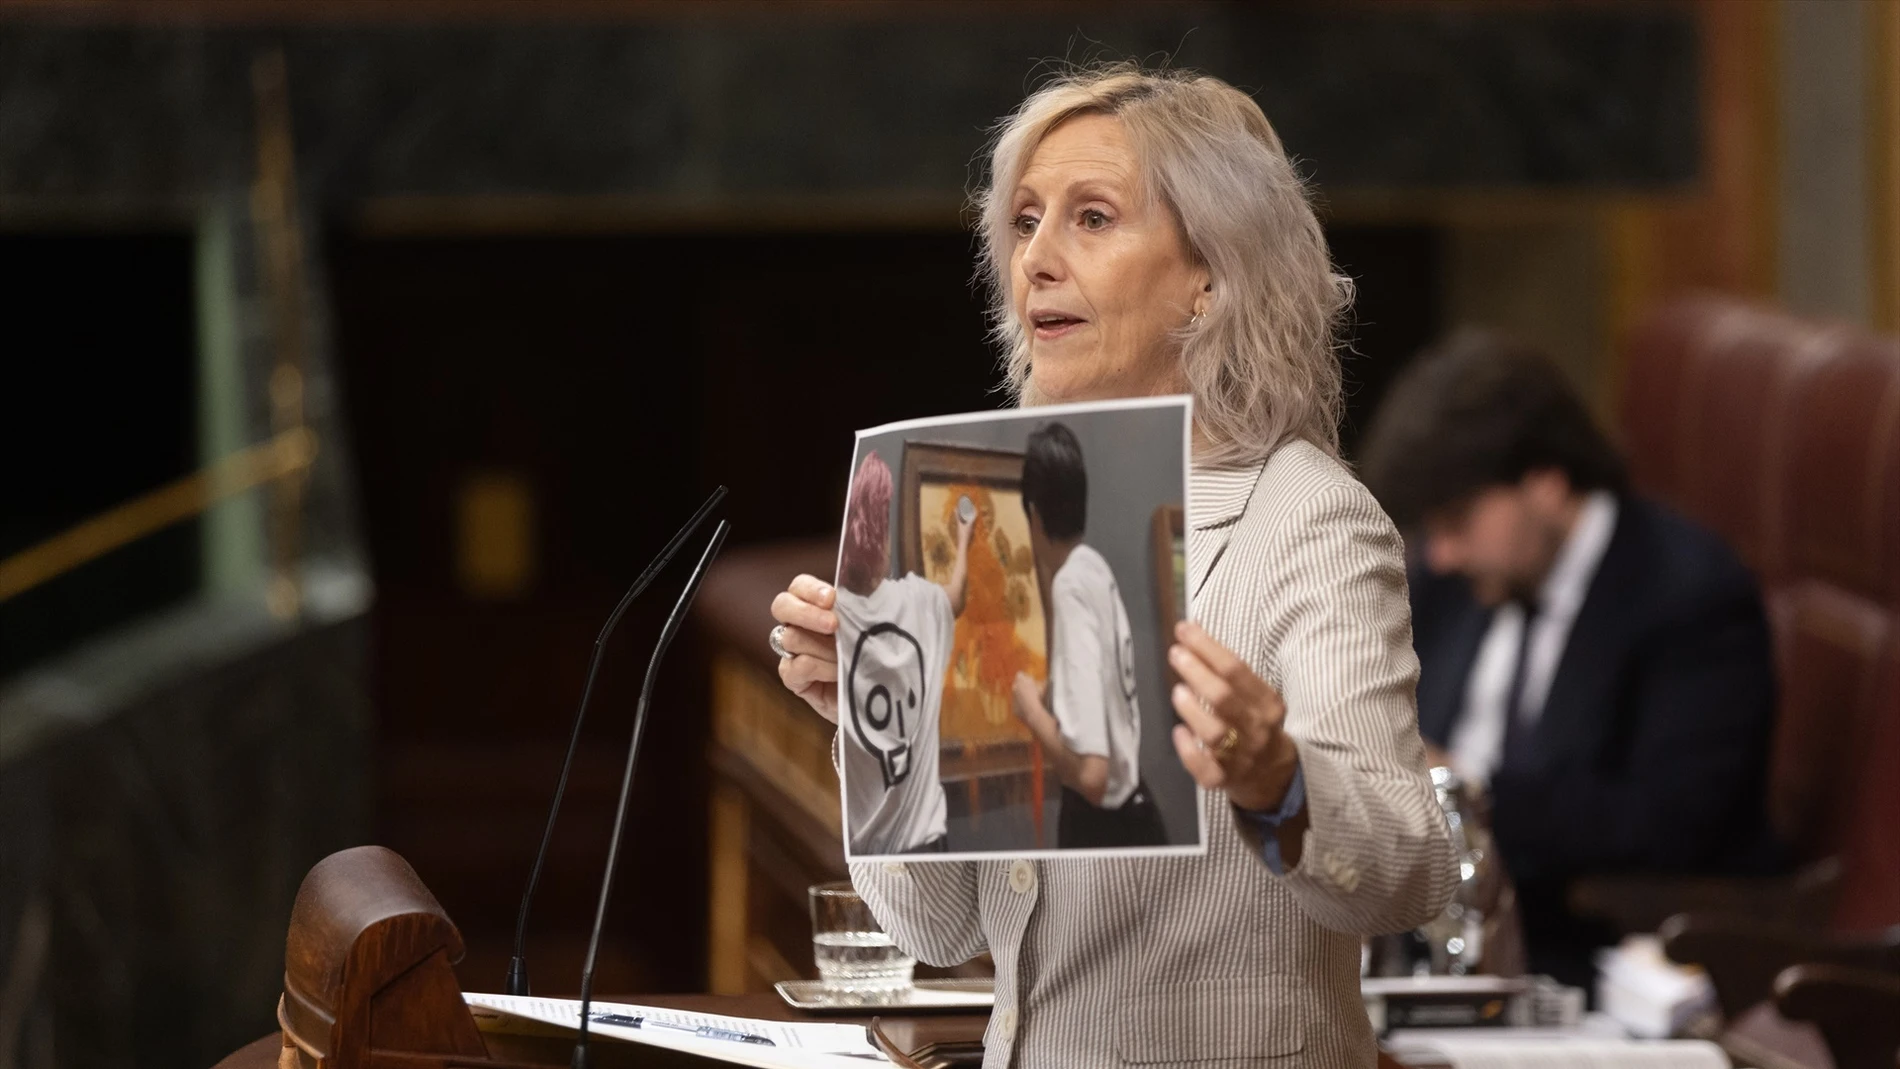 La diputada del PP Marta González muestra una imagen de un acto vandálico durante su intervención durante una sesión plenaria